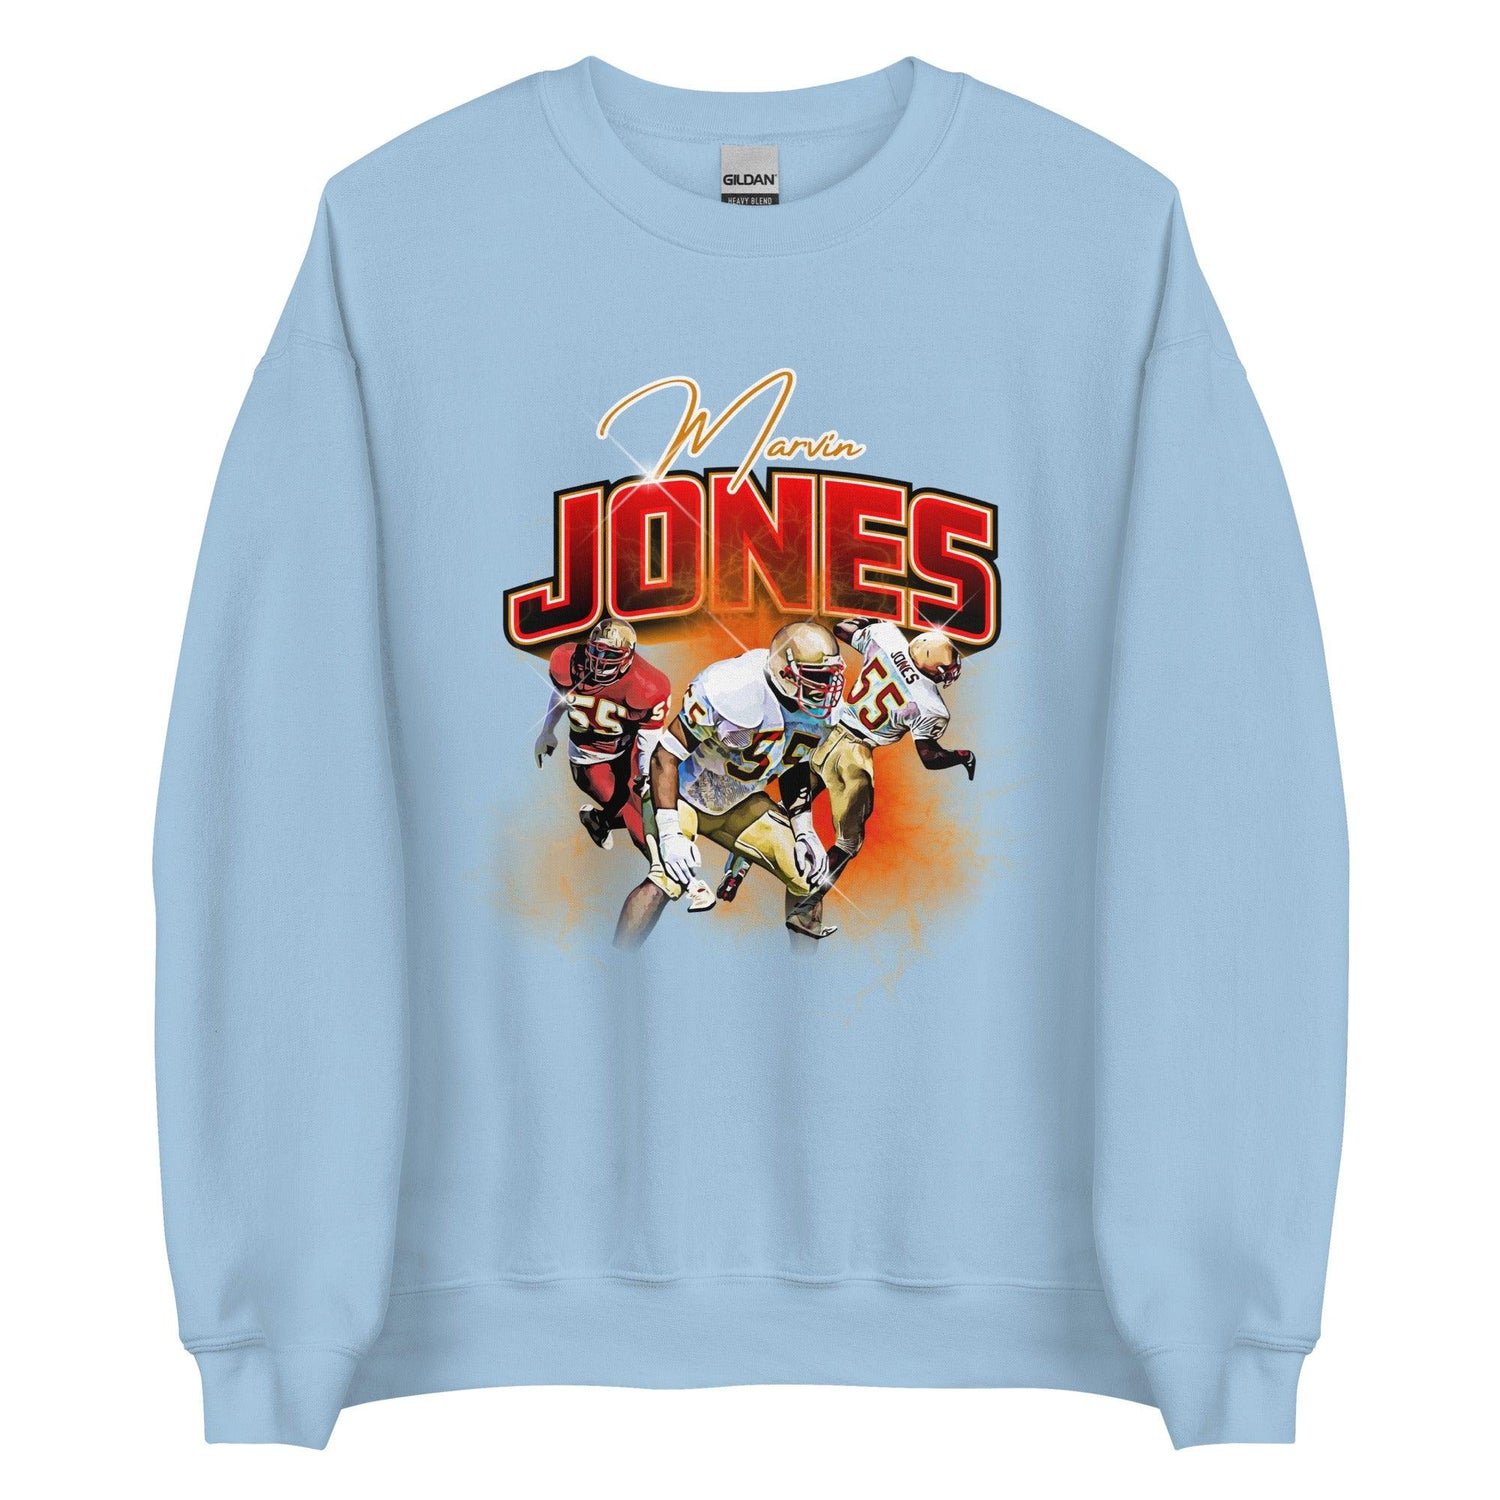 Marvin Jones "Vintage" Sweatshirt - Fan Arch